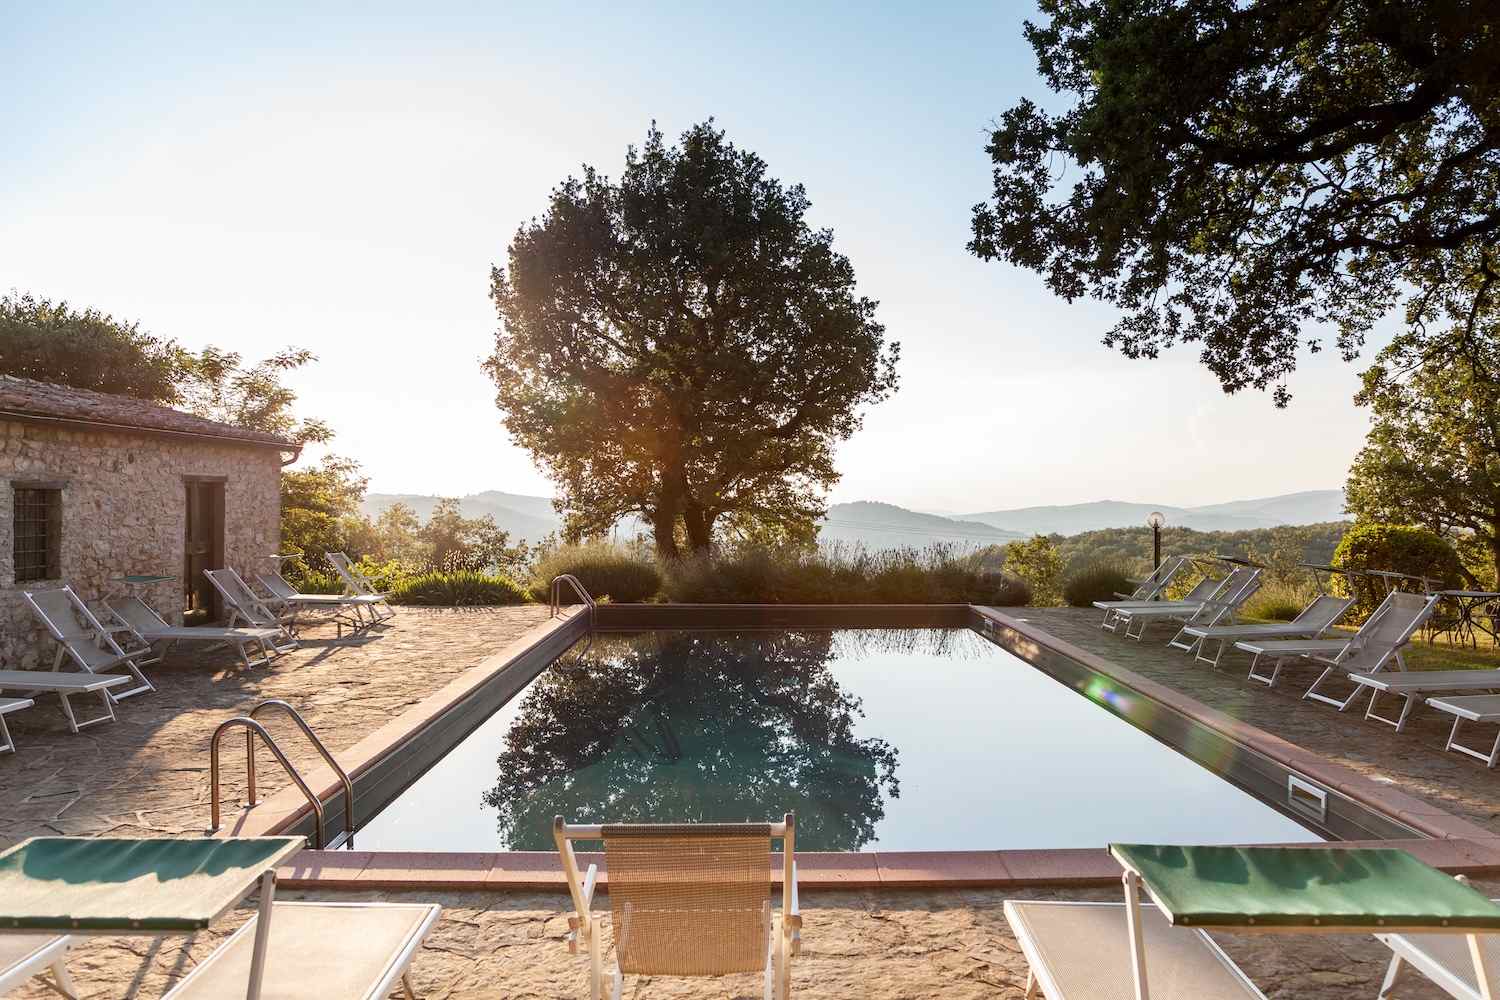 L'Agriturismo Querceto di Castellina in Chianti è un luogo accogliente, solare e rilassante dove vivere un'emozionante vacanza in Toscana